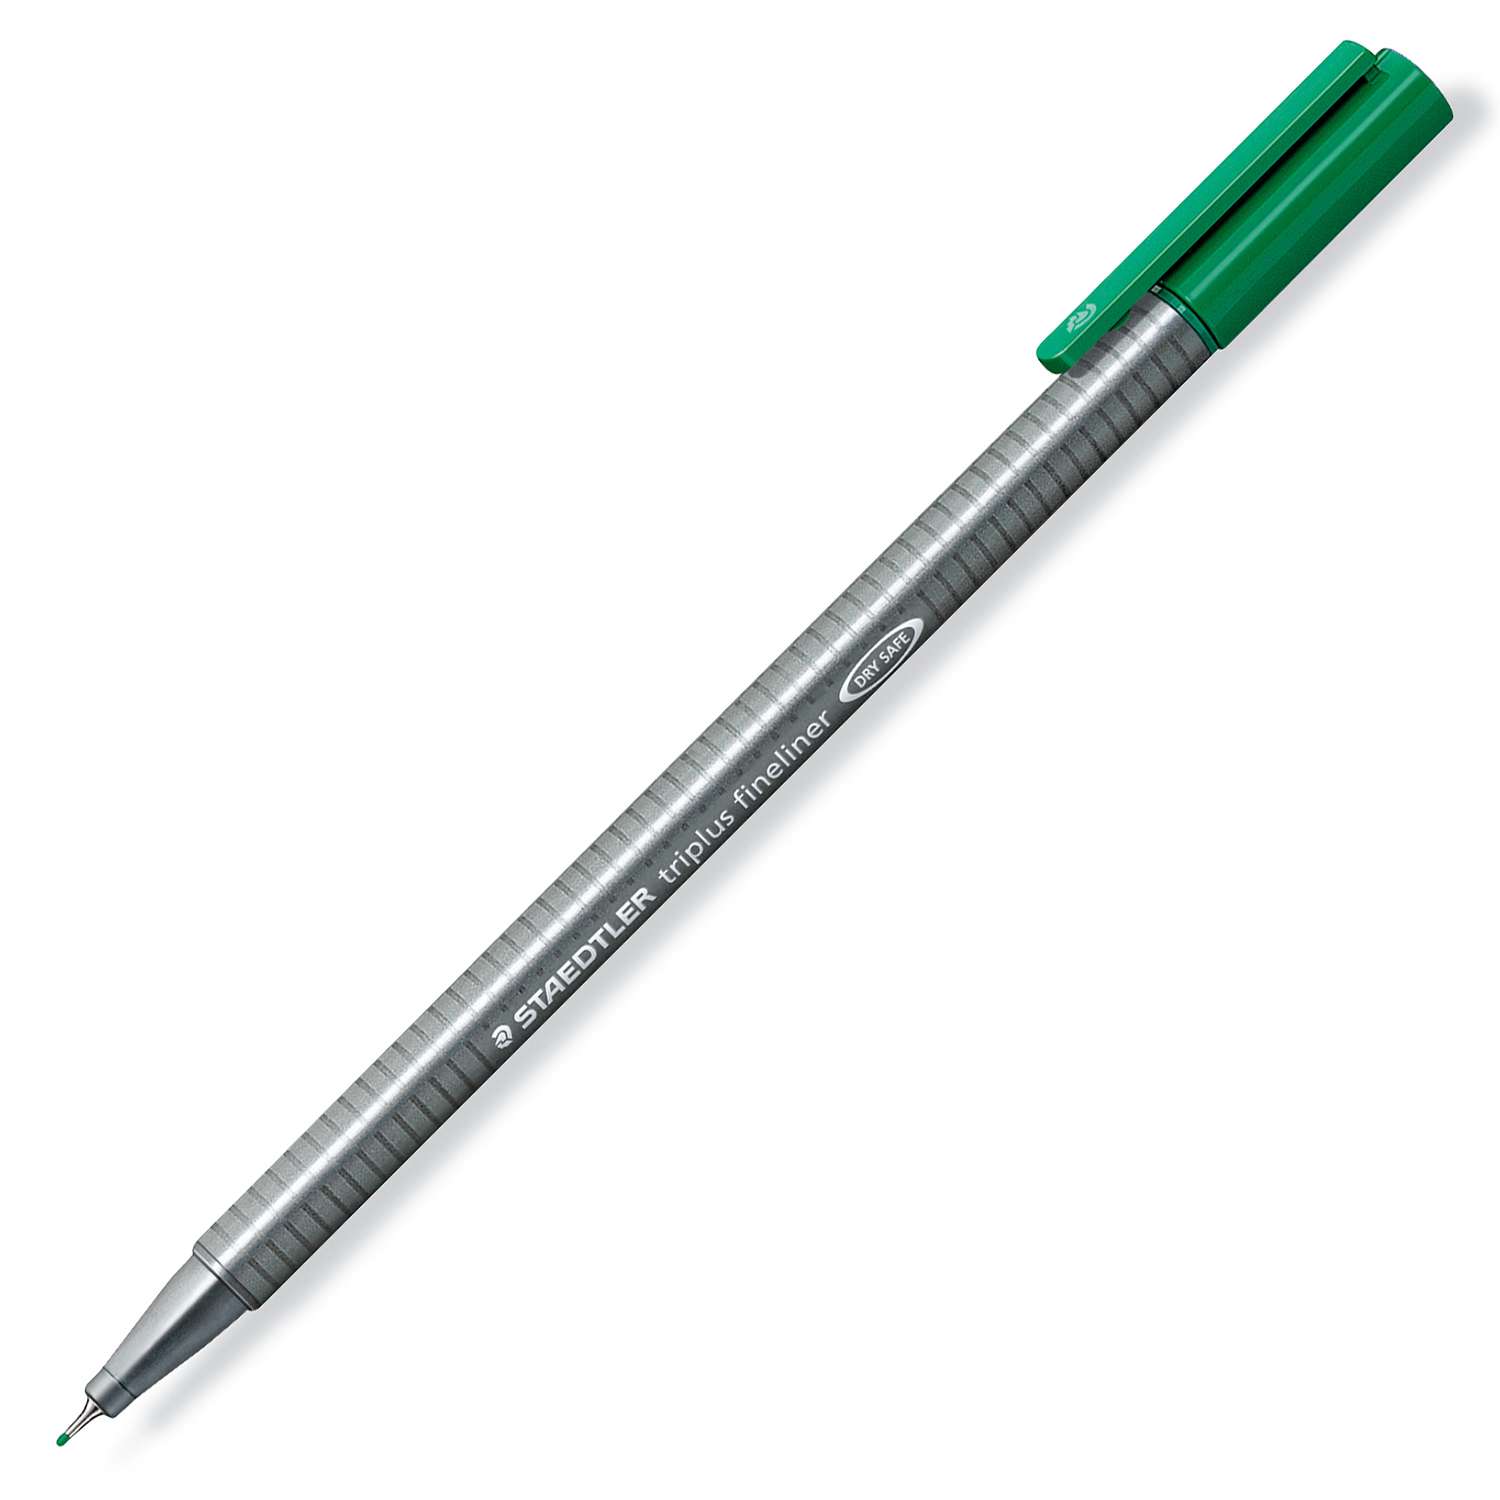 Ручка капиллярная Staedtler Triplus трехгранная Зеленая - фото 1